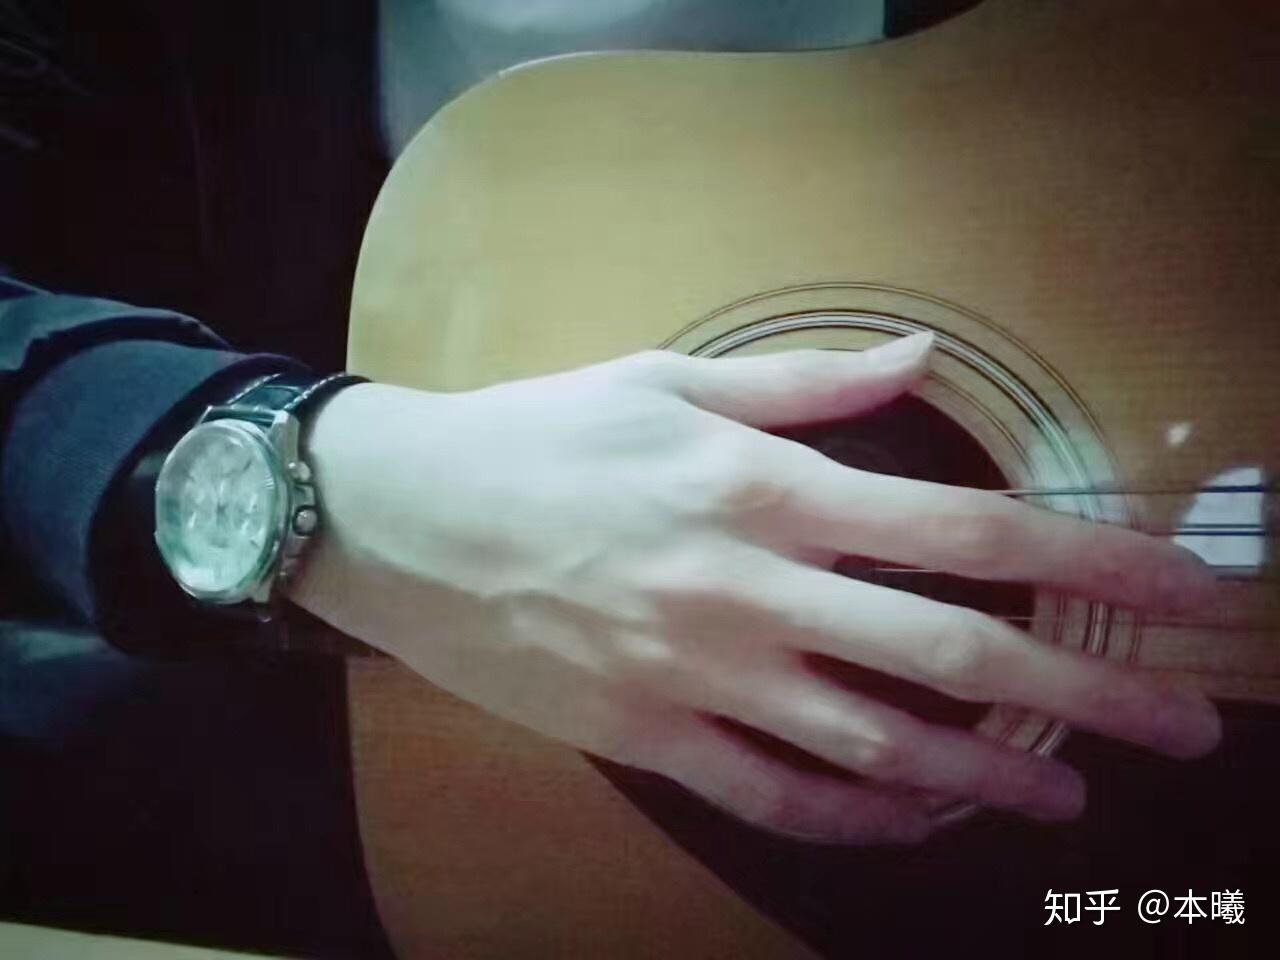 我想看看弹吉他的手 是不是都很秀气那种?